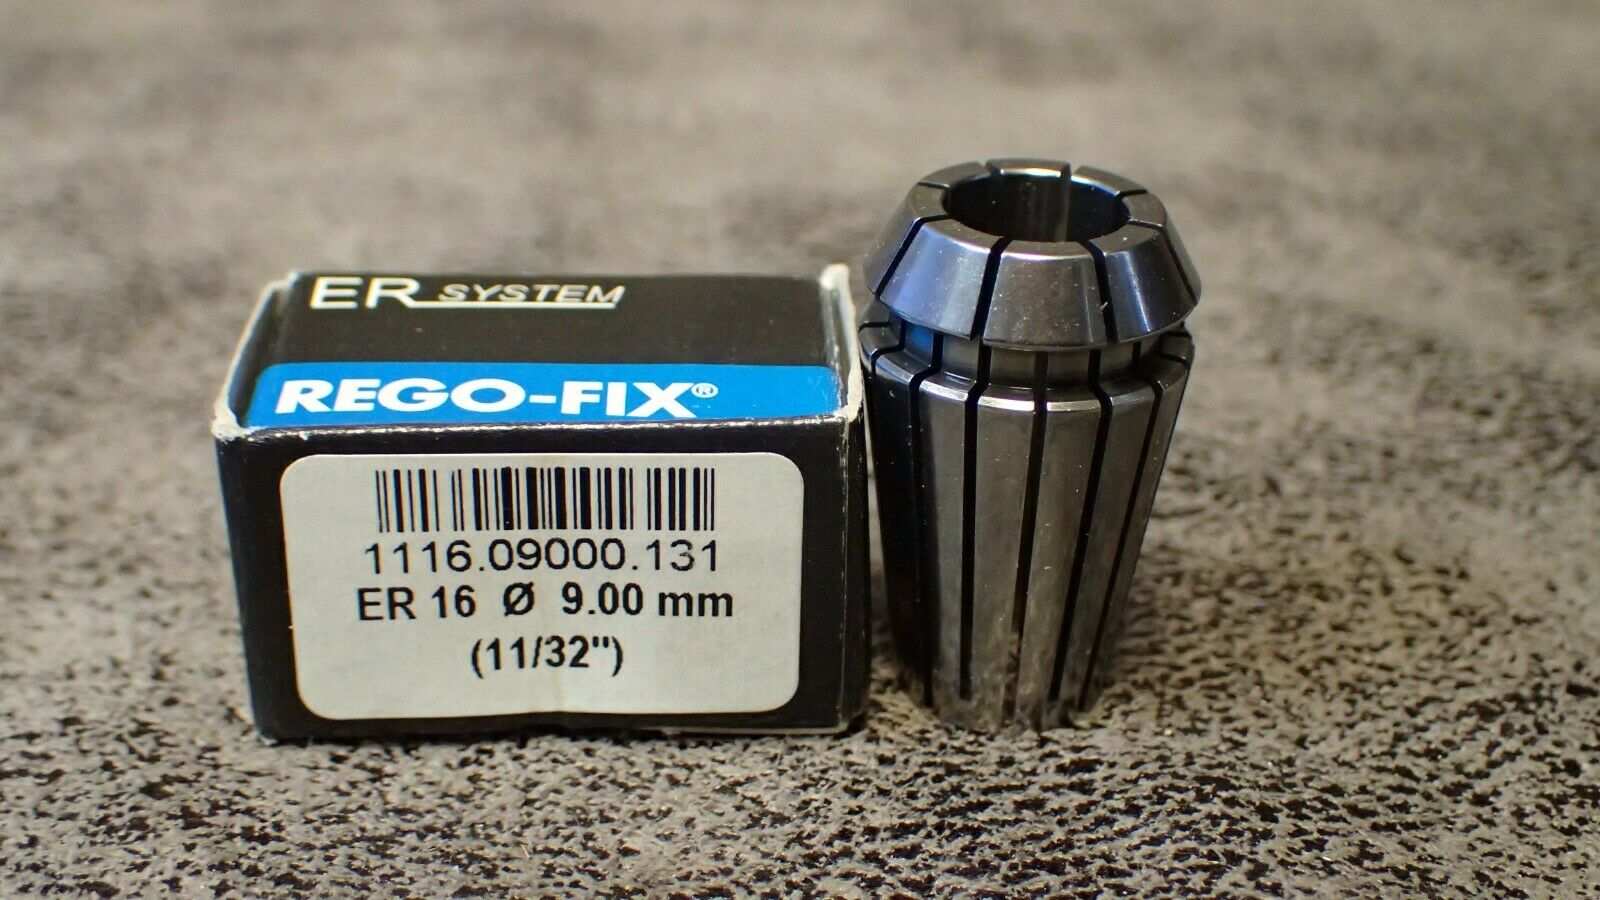 1116.09000.131 Rego-fix 9mm-8mm Er16 Standard Cooling Collet 11/32", .3543-.315"